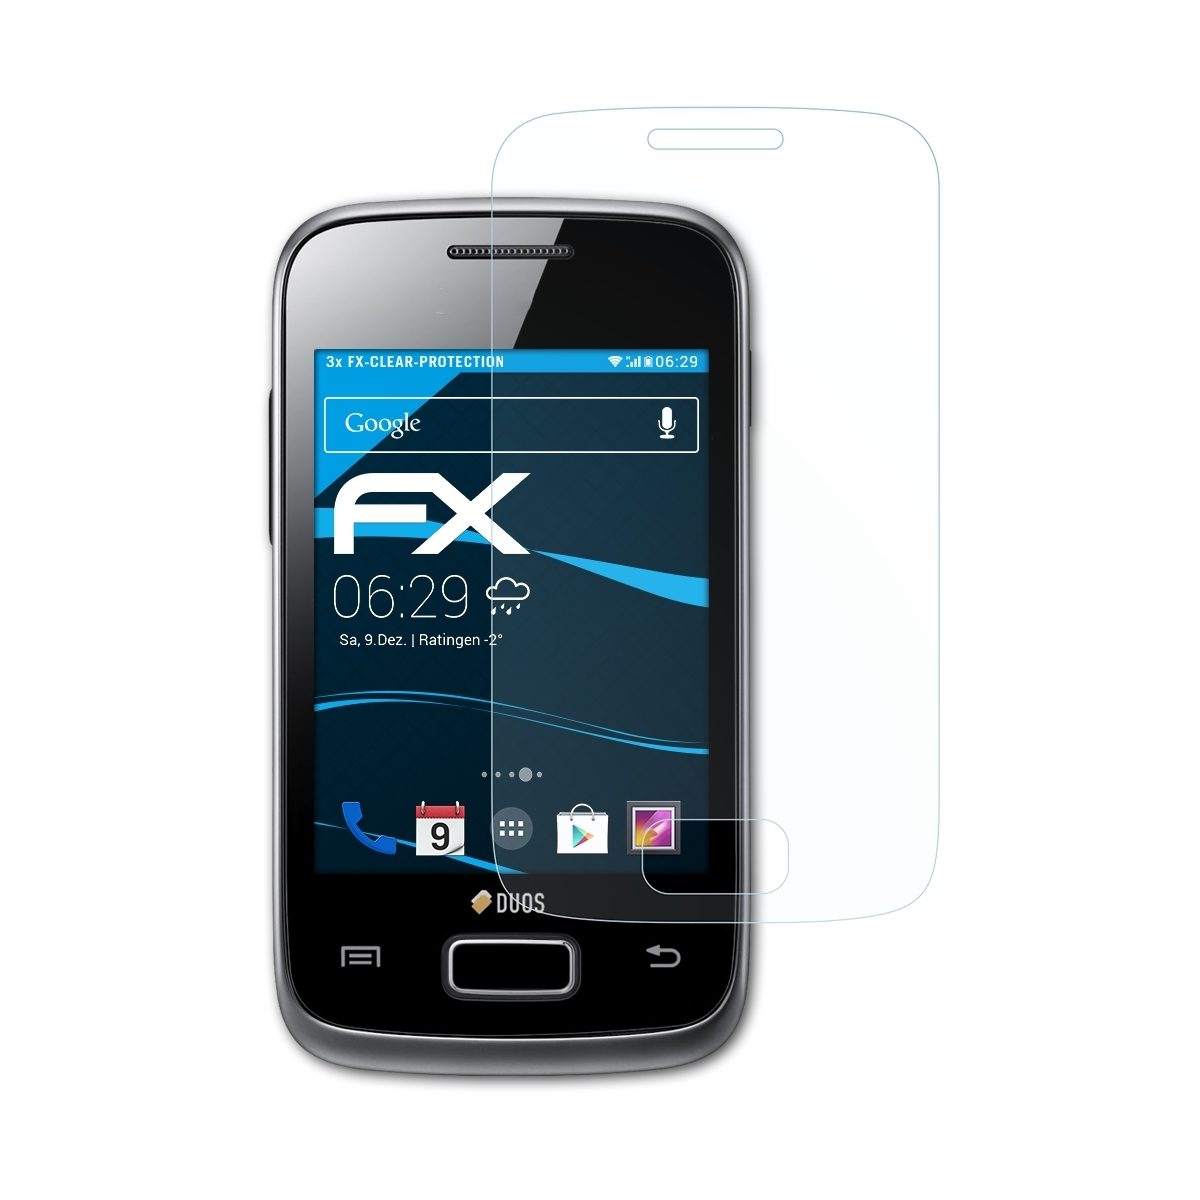 Displayschutz(für Duos FX-Clear Y 3x Samsung (GT-S6102)) ATFOLIX Galaxy